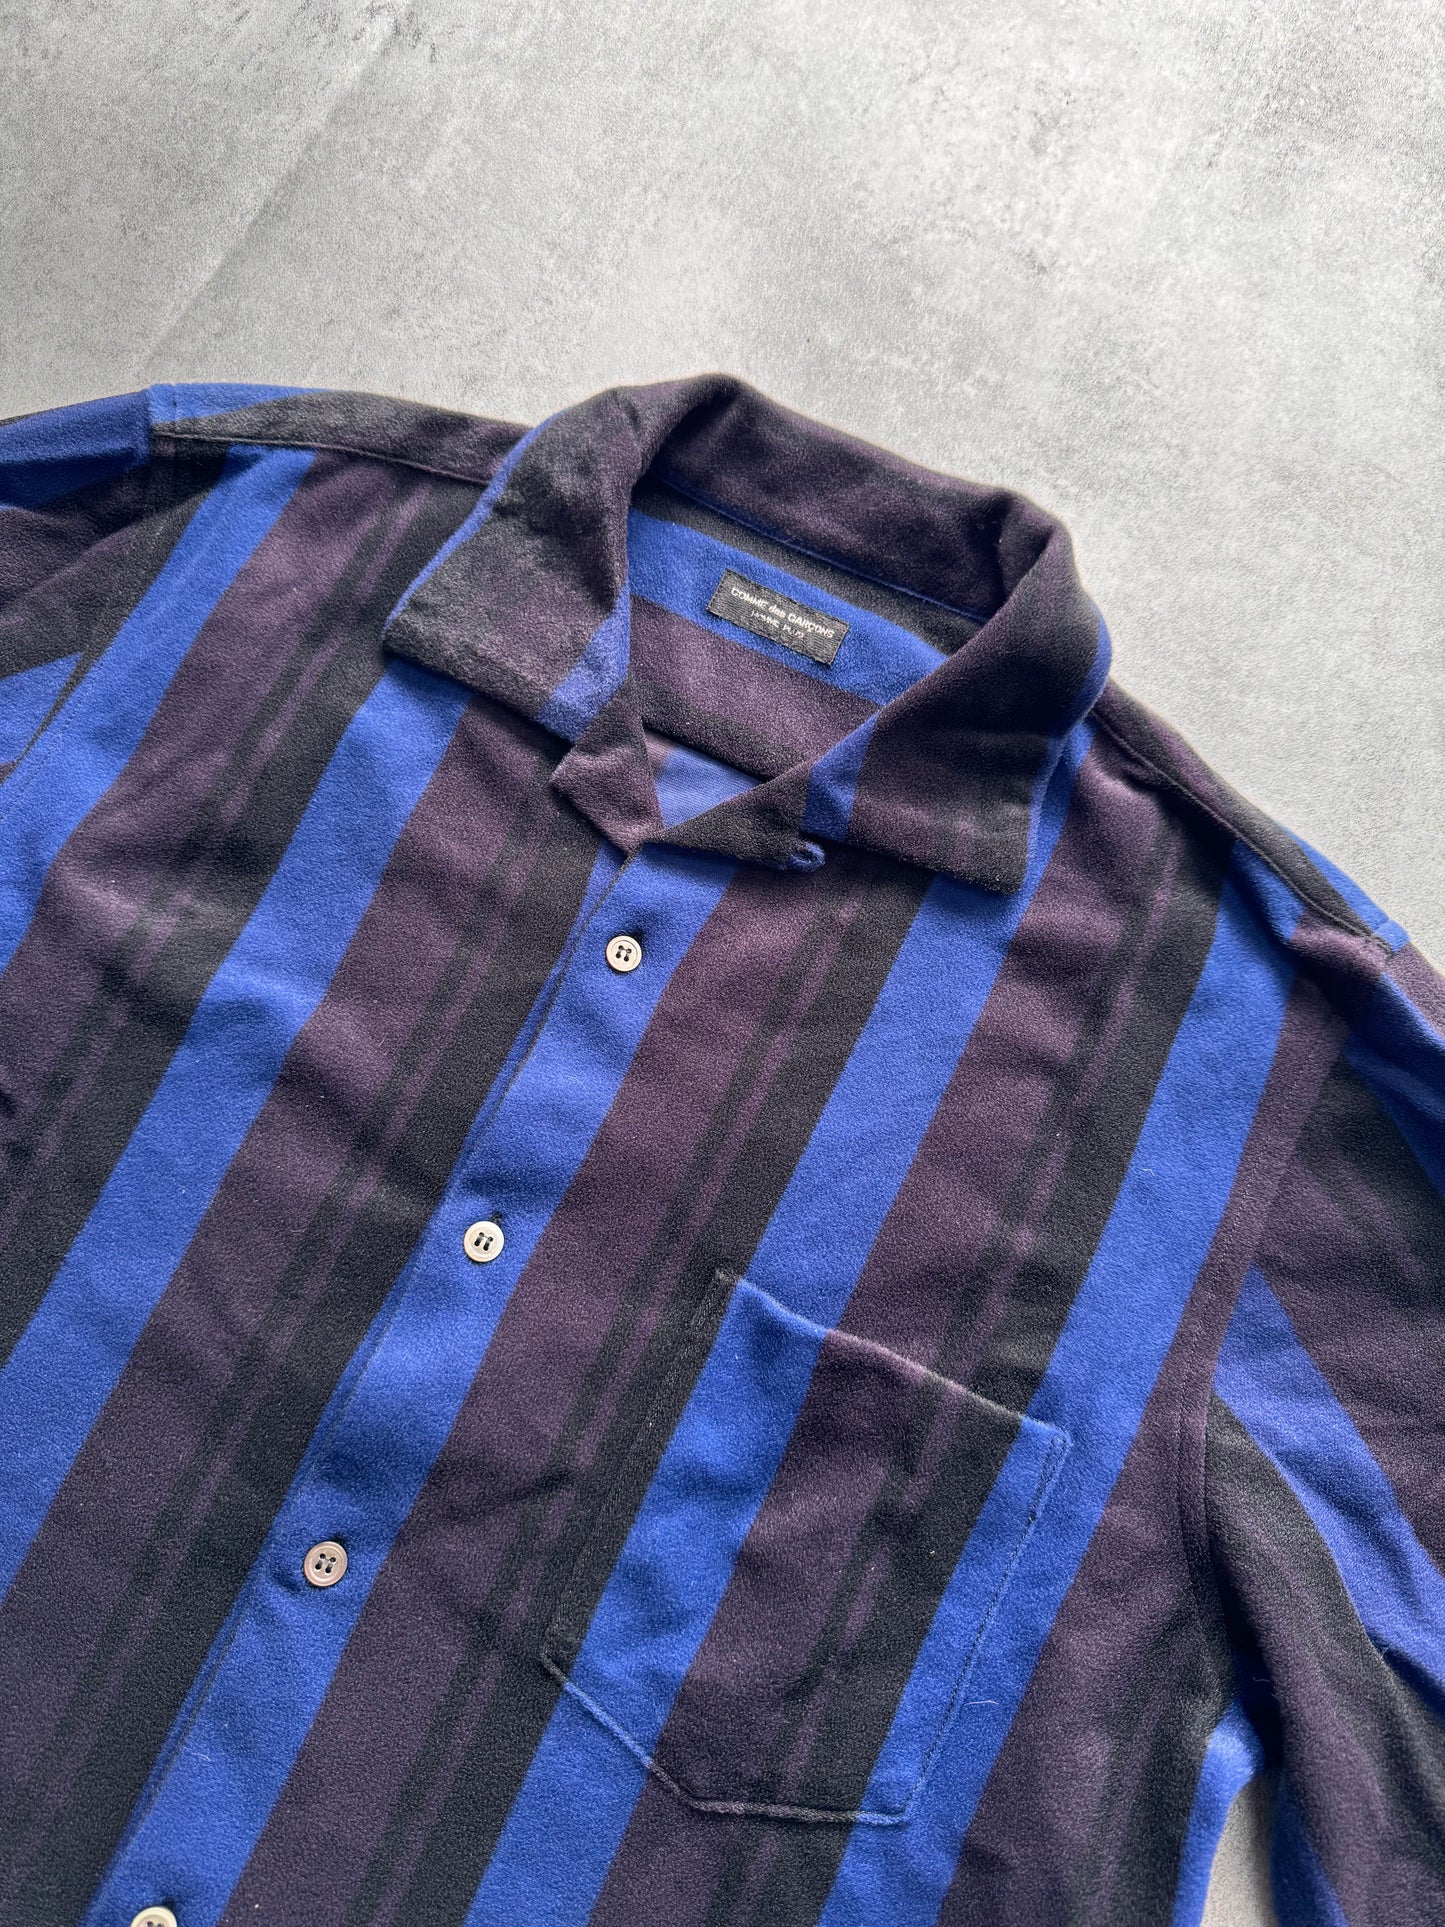 SS1996 Comme Des Garçons Homme Plus Striped Velvet Shirt (M)